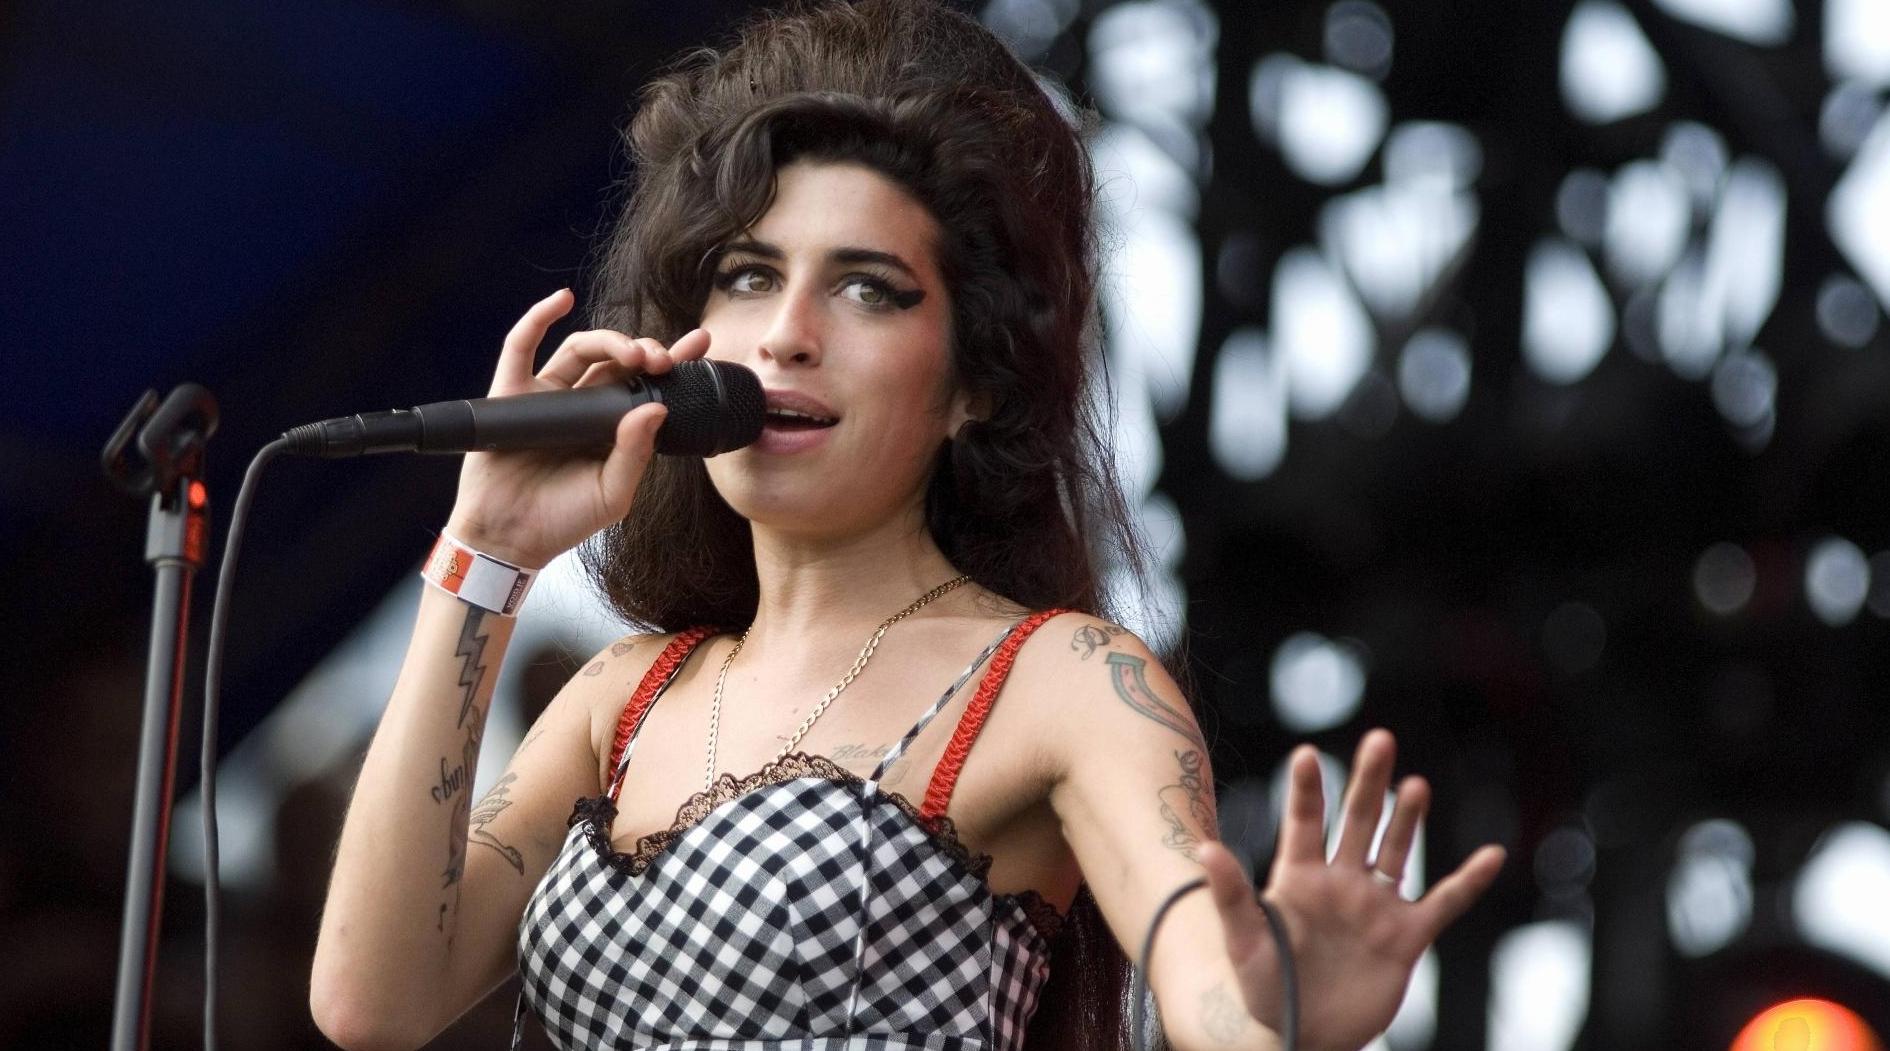 La dernière robe portée par Amy Winehouse à un concert vendue à 243.200 dollars